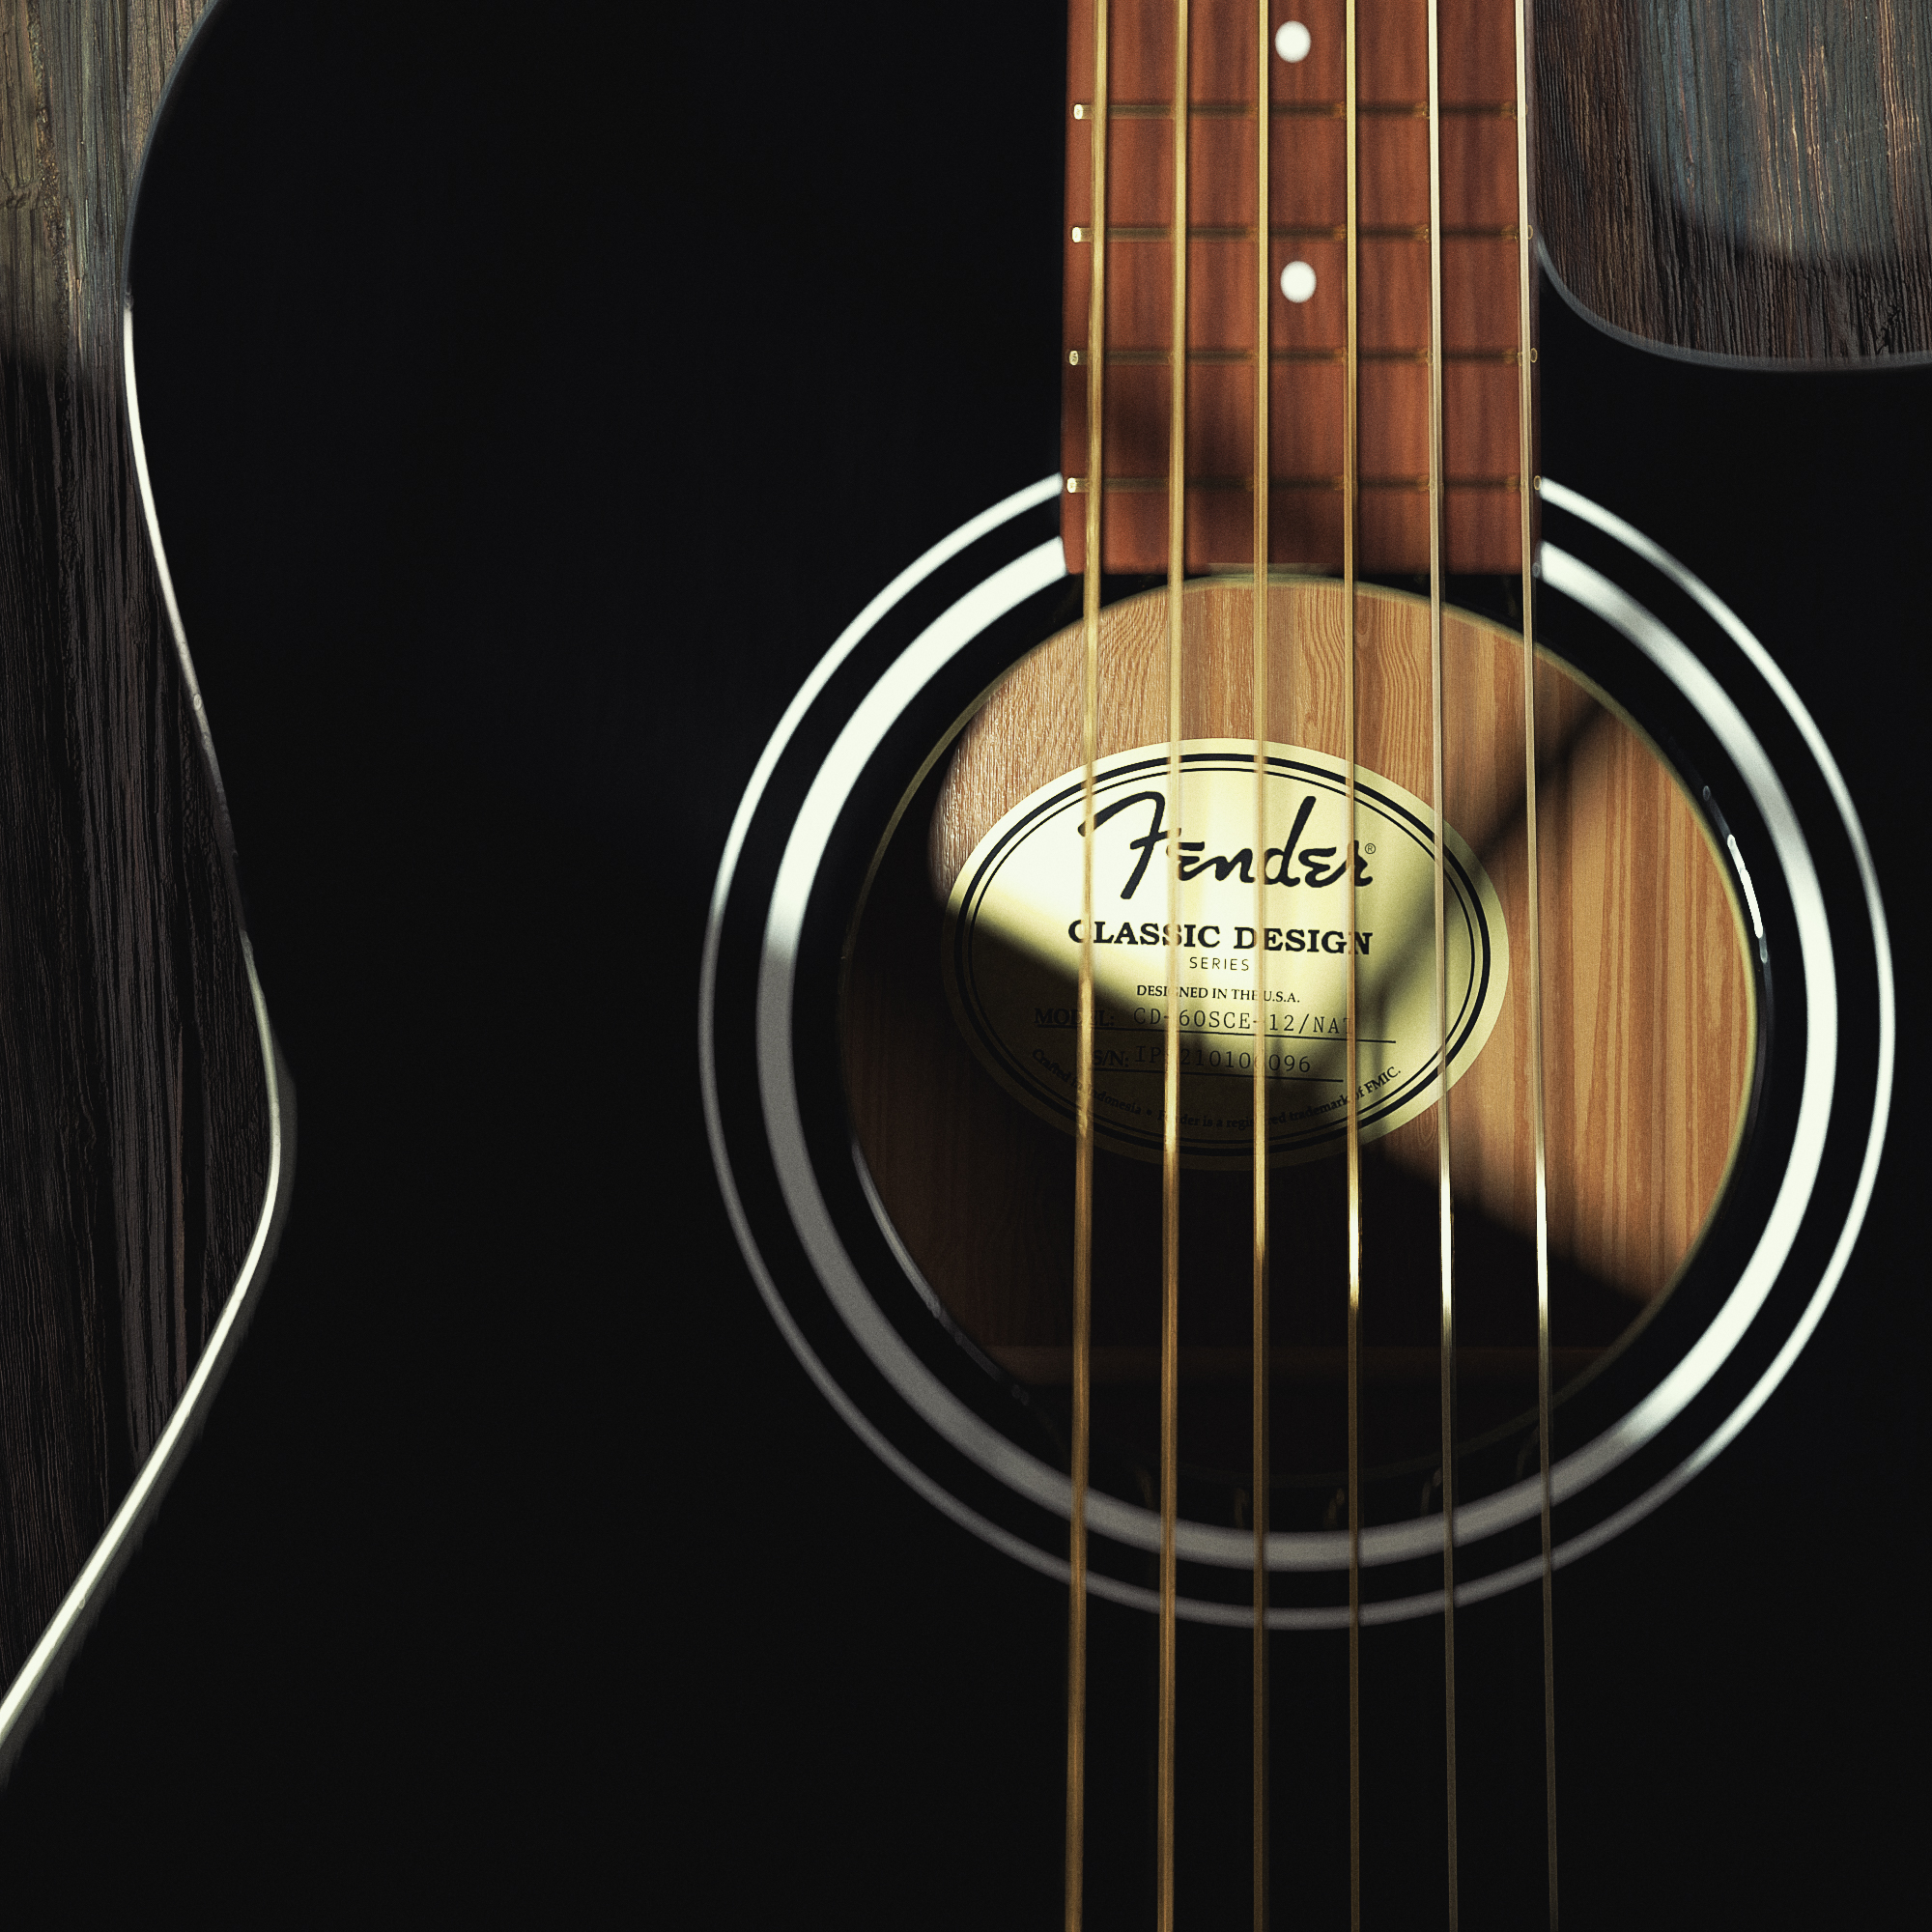 3D Model - Fender Acoustic Guitar Render - 03